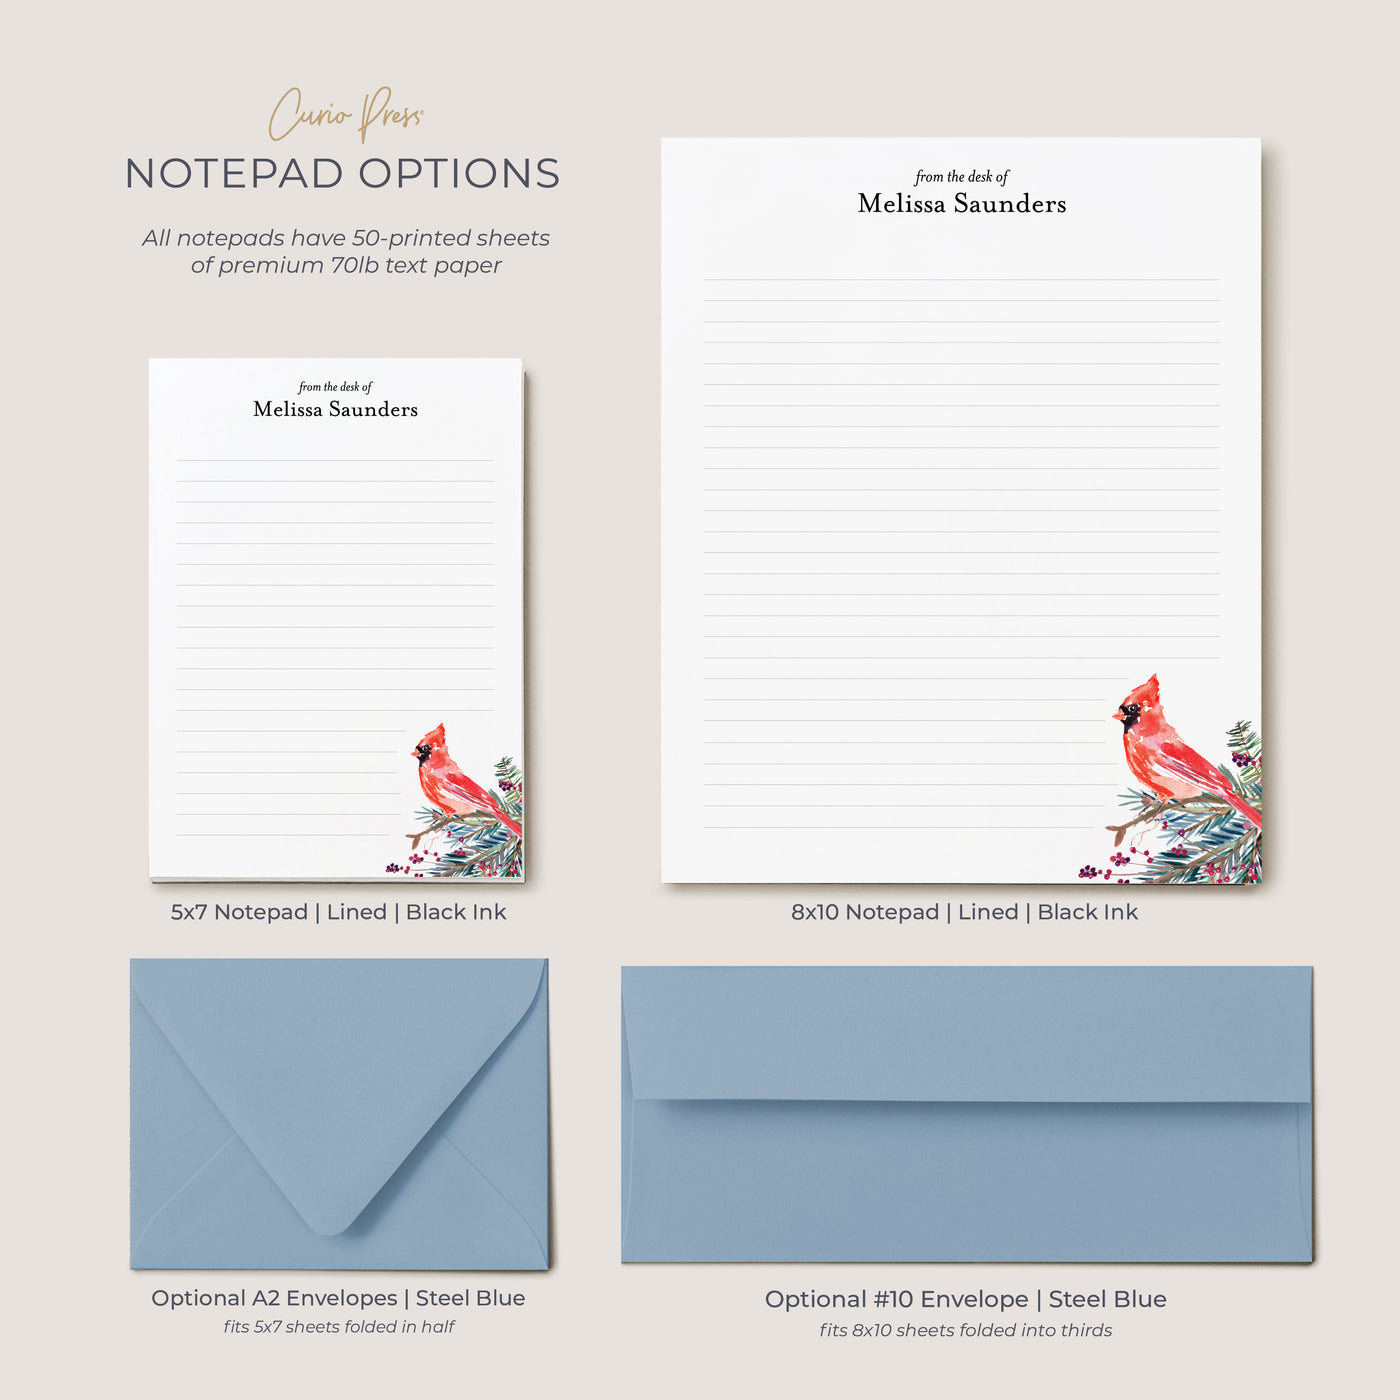 Cardinal: Notepad